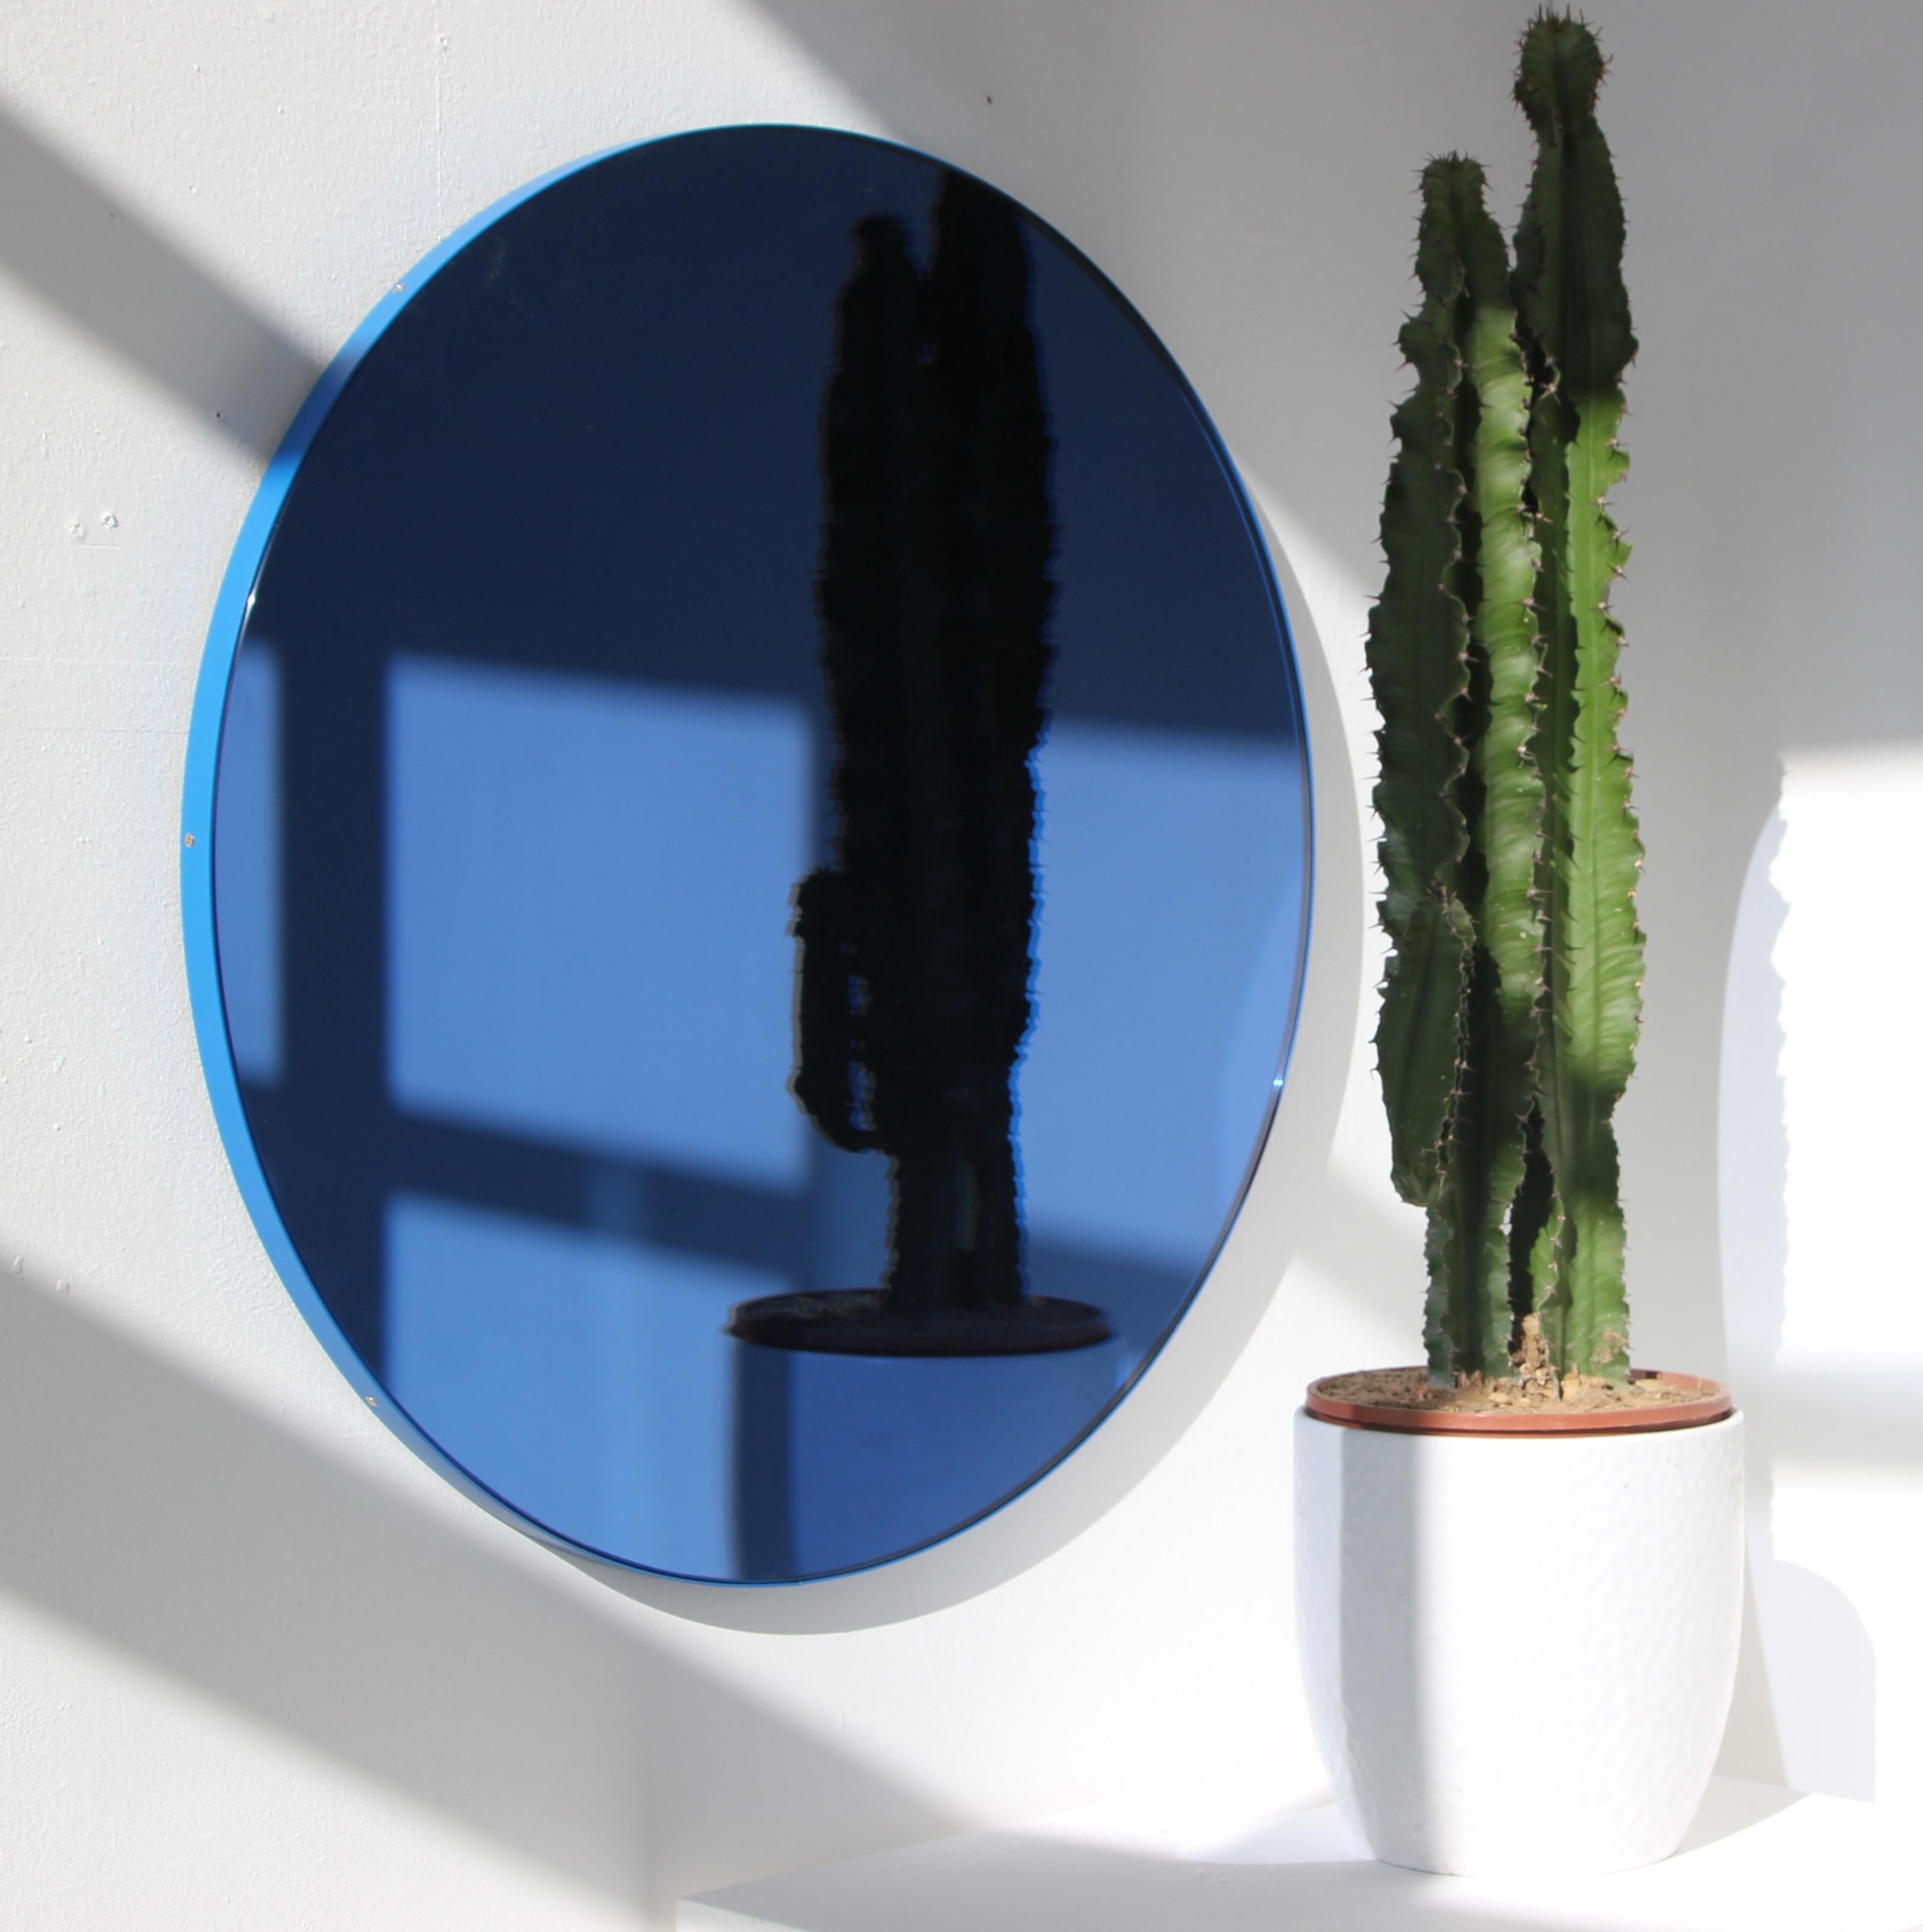 Miroir rond contemporain teinté bleu avec un cadre en aluminium peint par poudrage bleu. Conçue et fabriquée à la main à Londres, au Royaume-Uni.

Les miroirs de taille moyenne, grande et extra-large (60, 80 et 100 cm) sont équipés d'un ingénieux